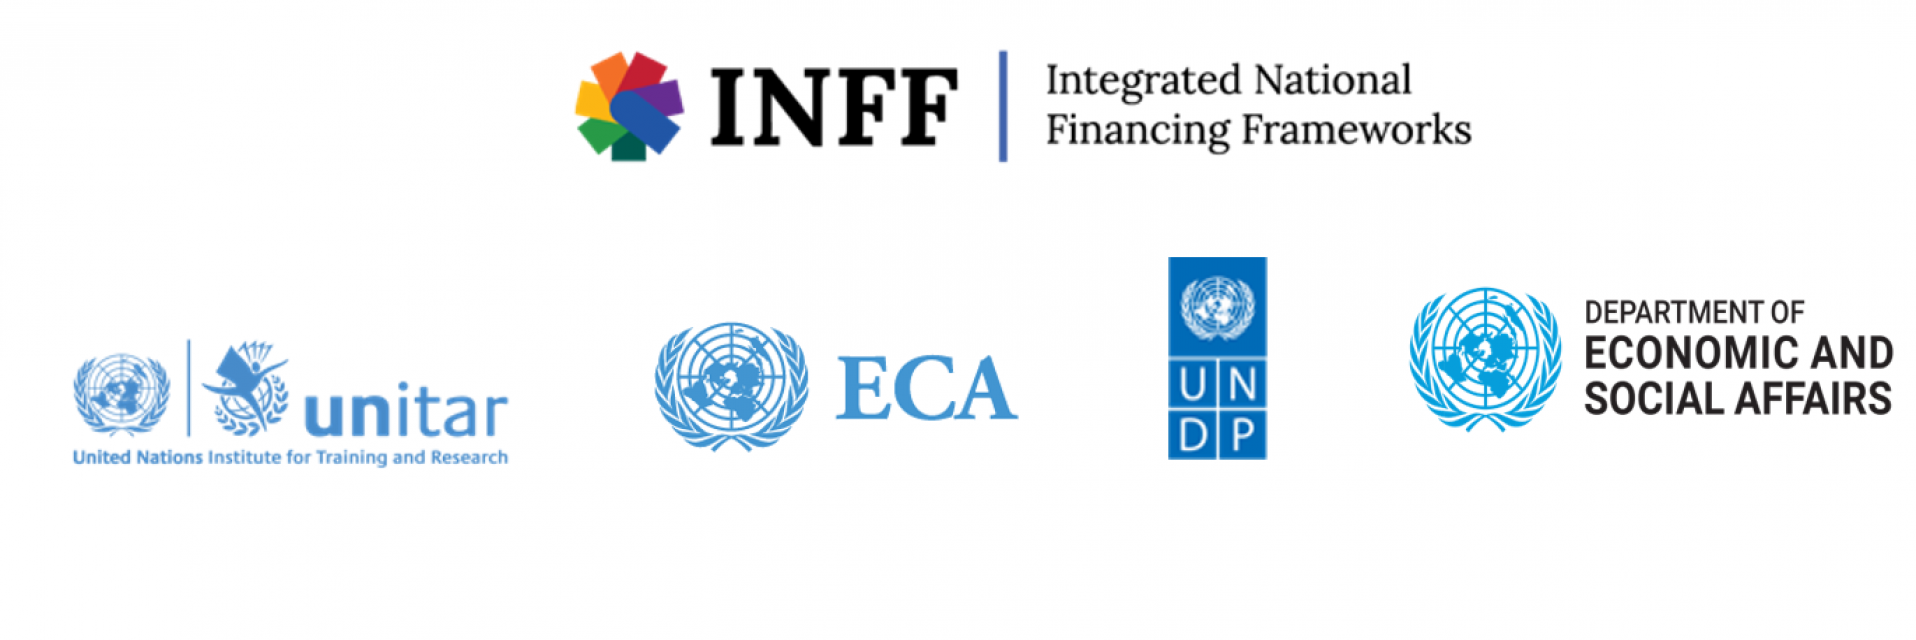 Workshop on integrated national financing frameworks in Africa